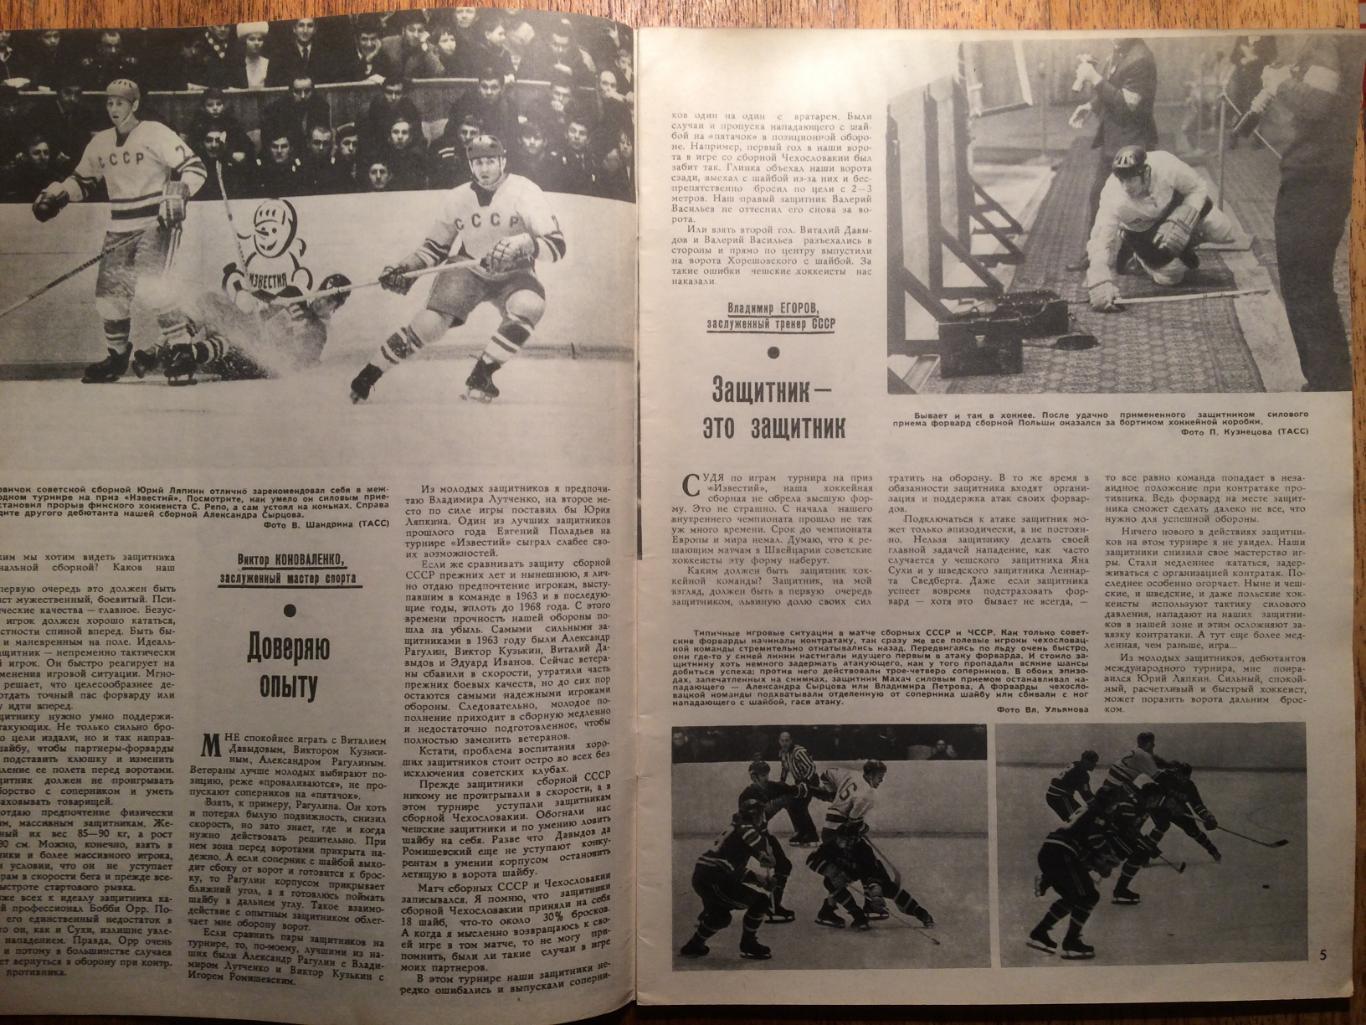 Журнал Спортивные игры №2 1971 Третьяк 2